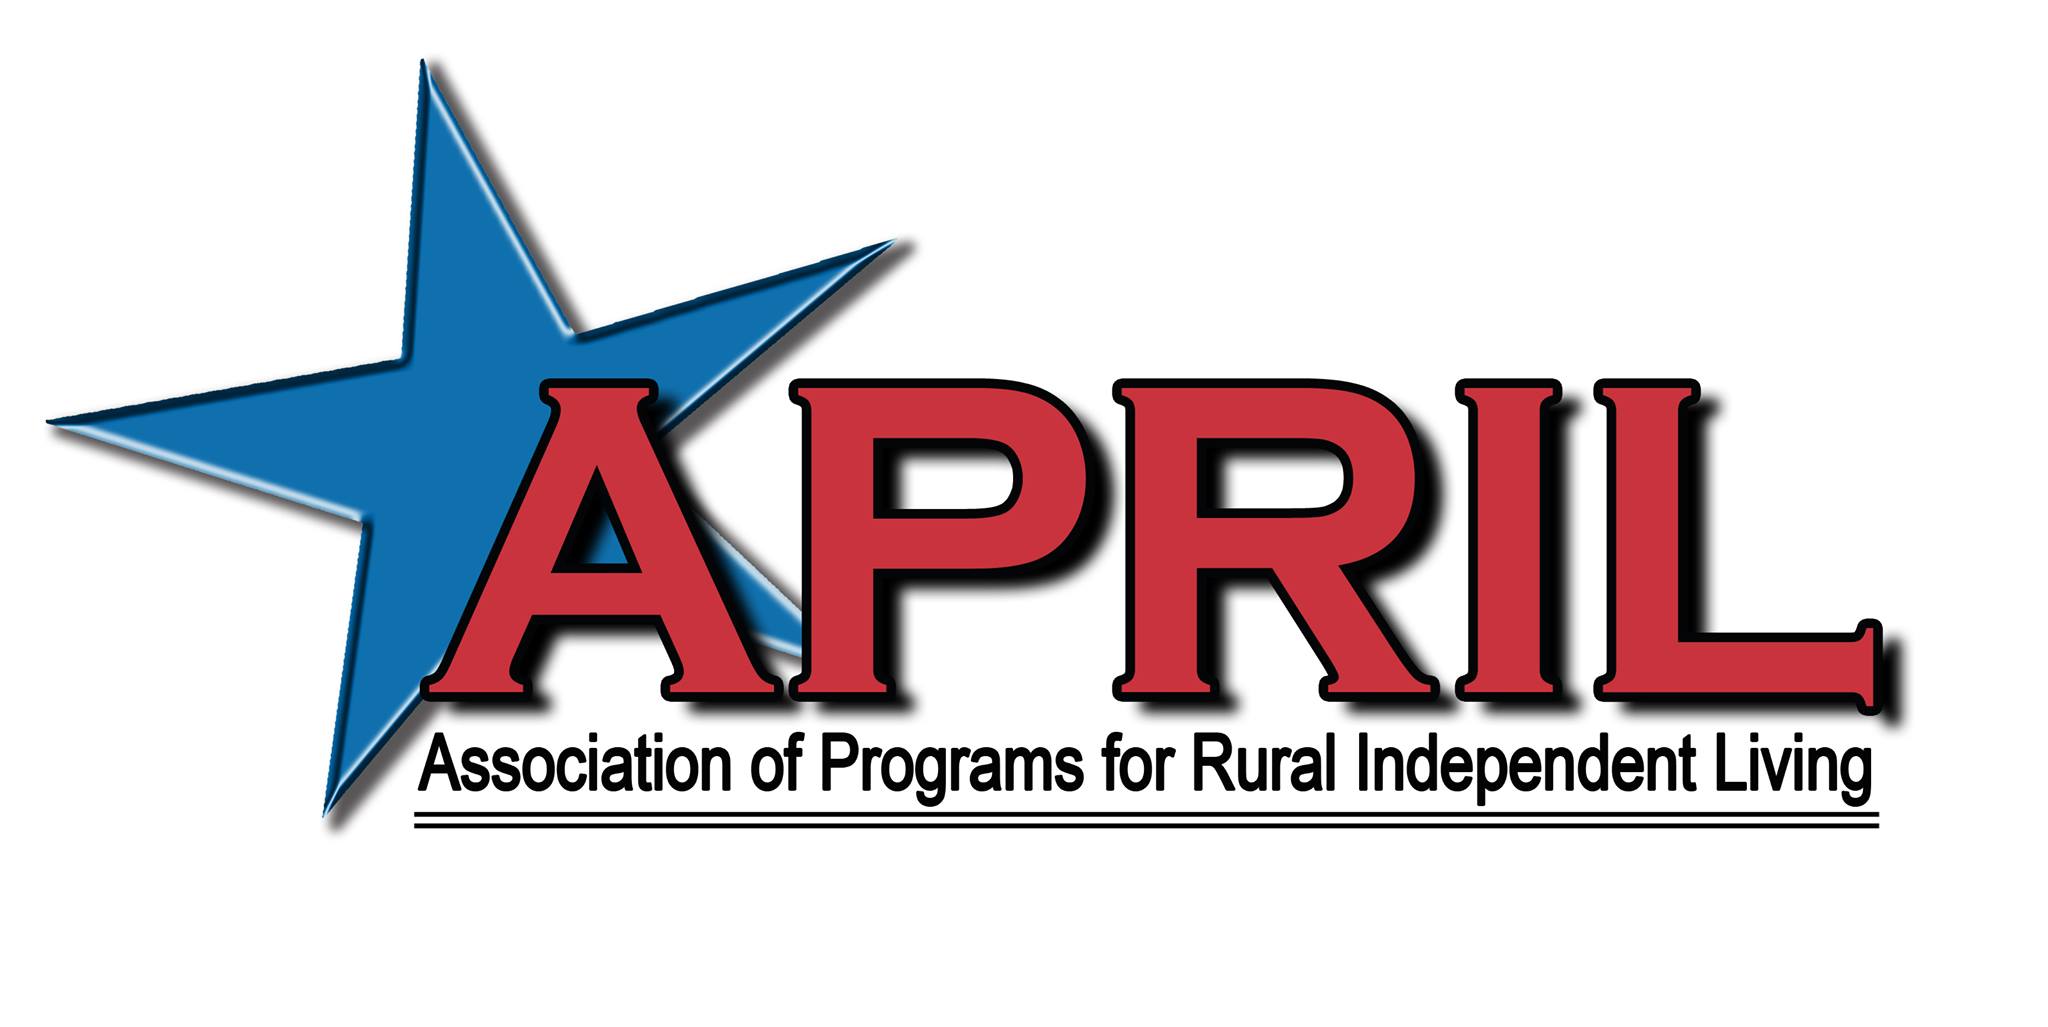 Association of Programs for Rural Independent Living logo